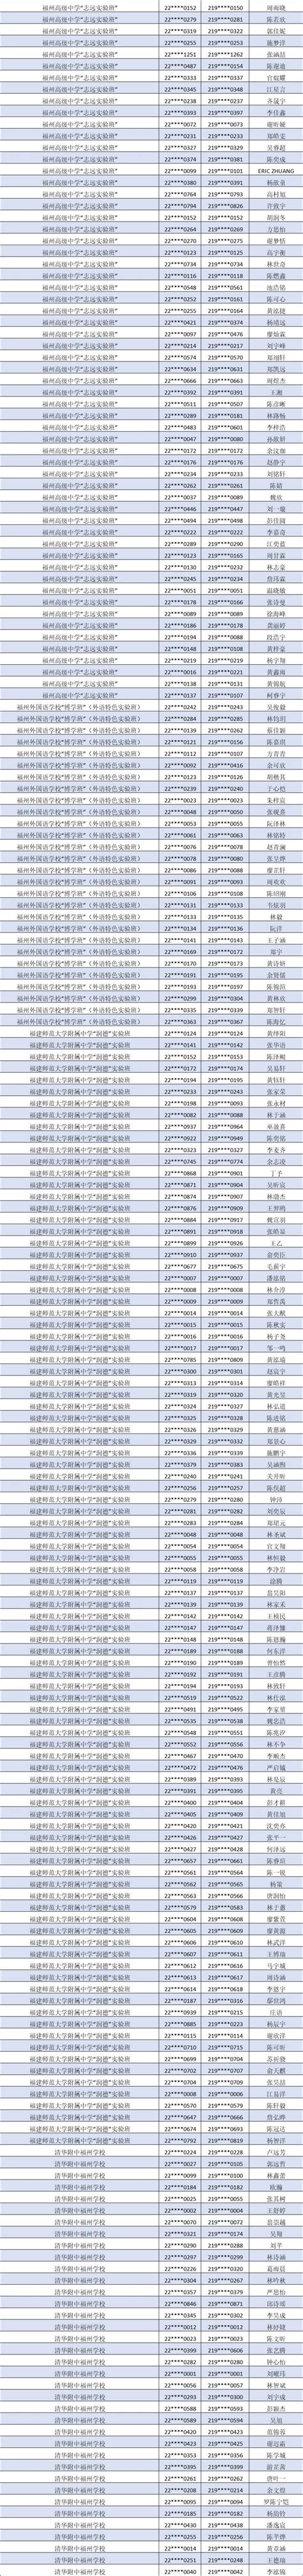 福州第三中学滨海校区2022级高一新生录取名单公示_陈亨淦_李晨曦_审核